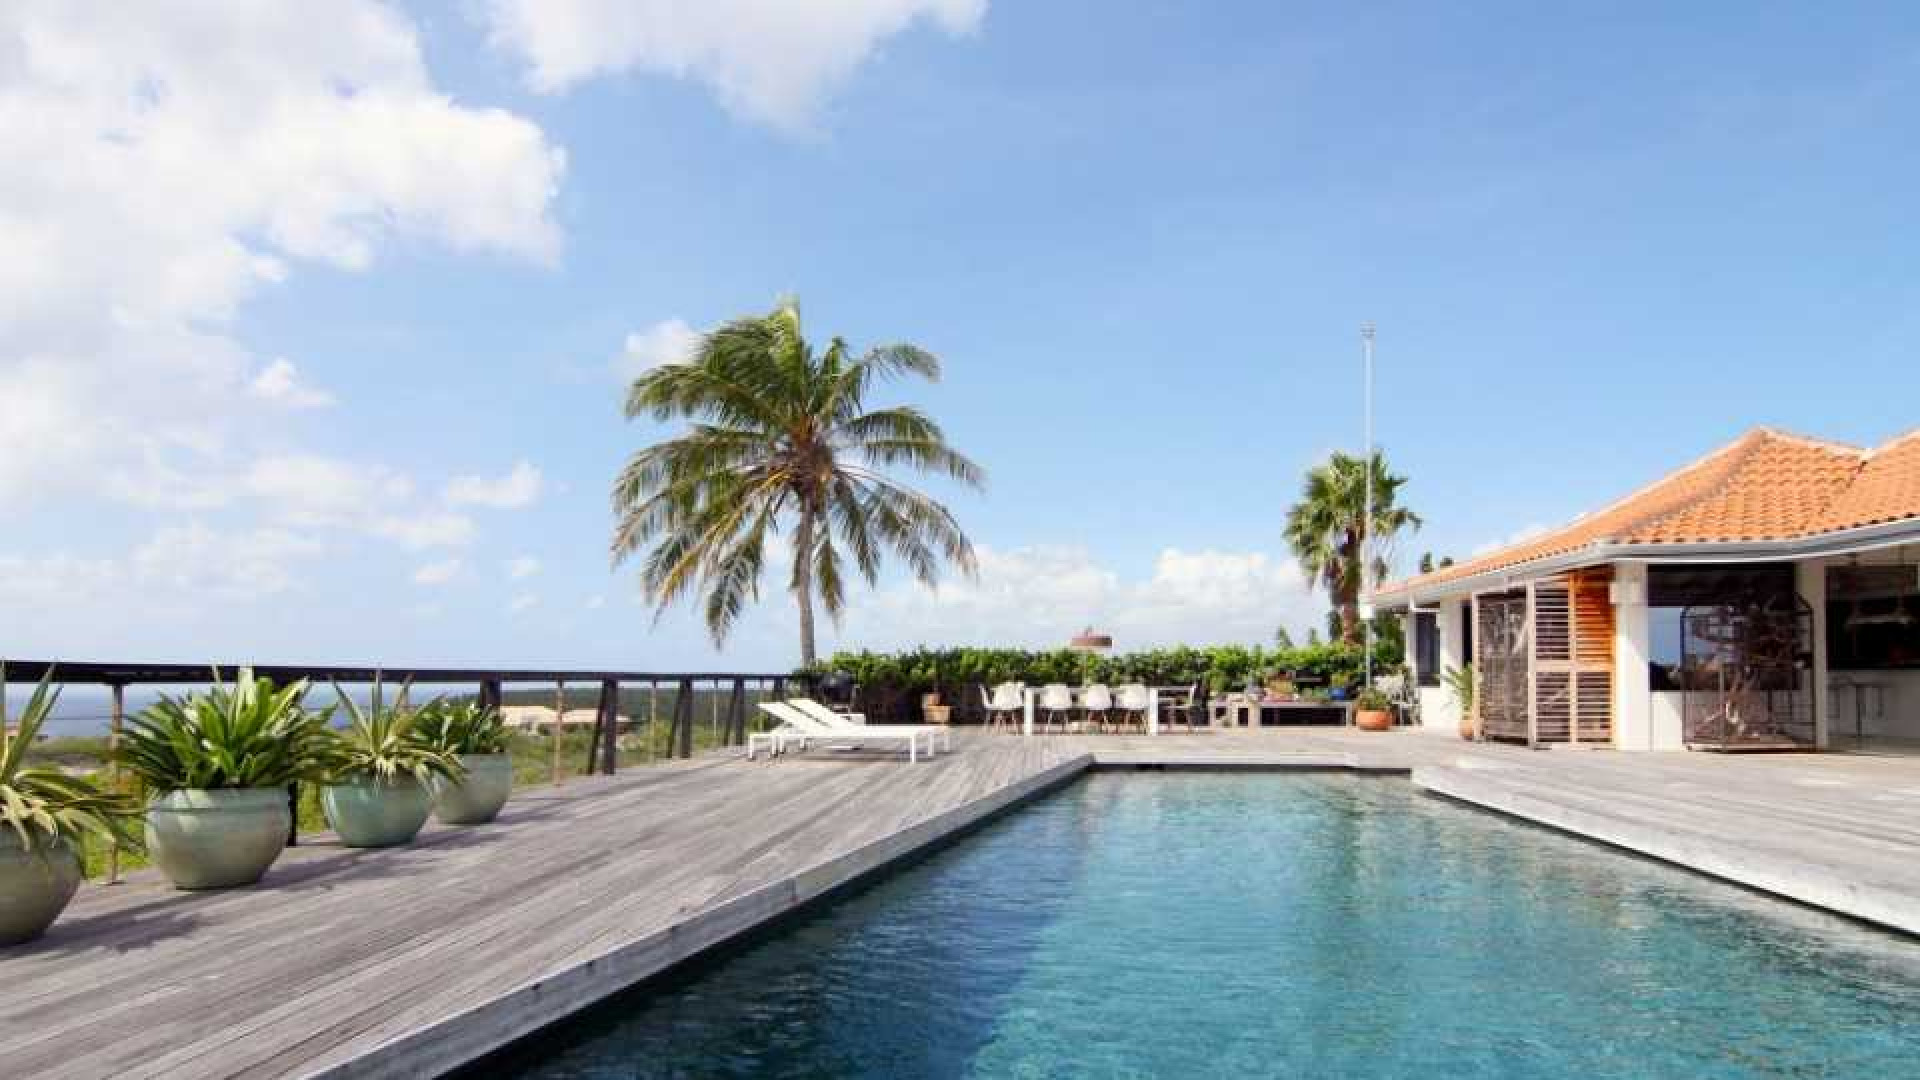 Miljoenenvilla Barry Hay op Curacao verkocht. Zie foto's 6